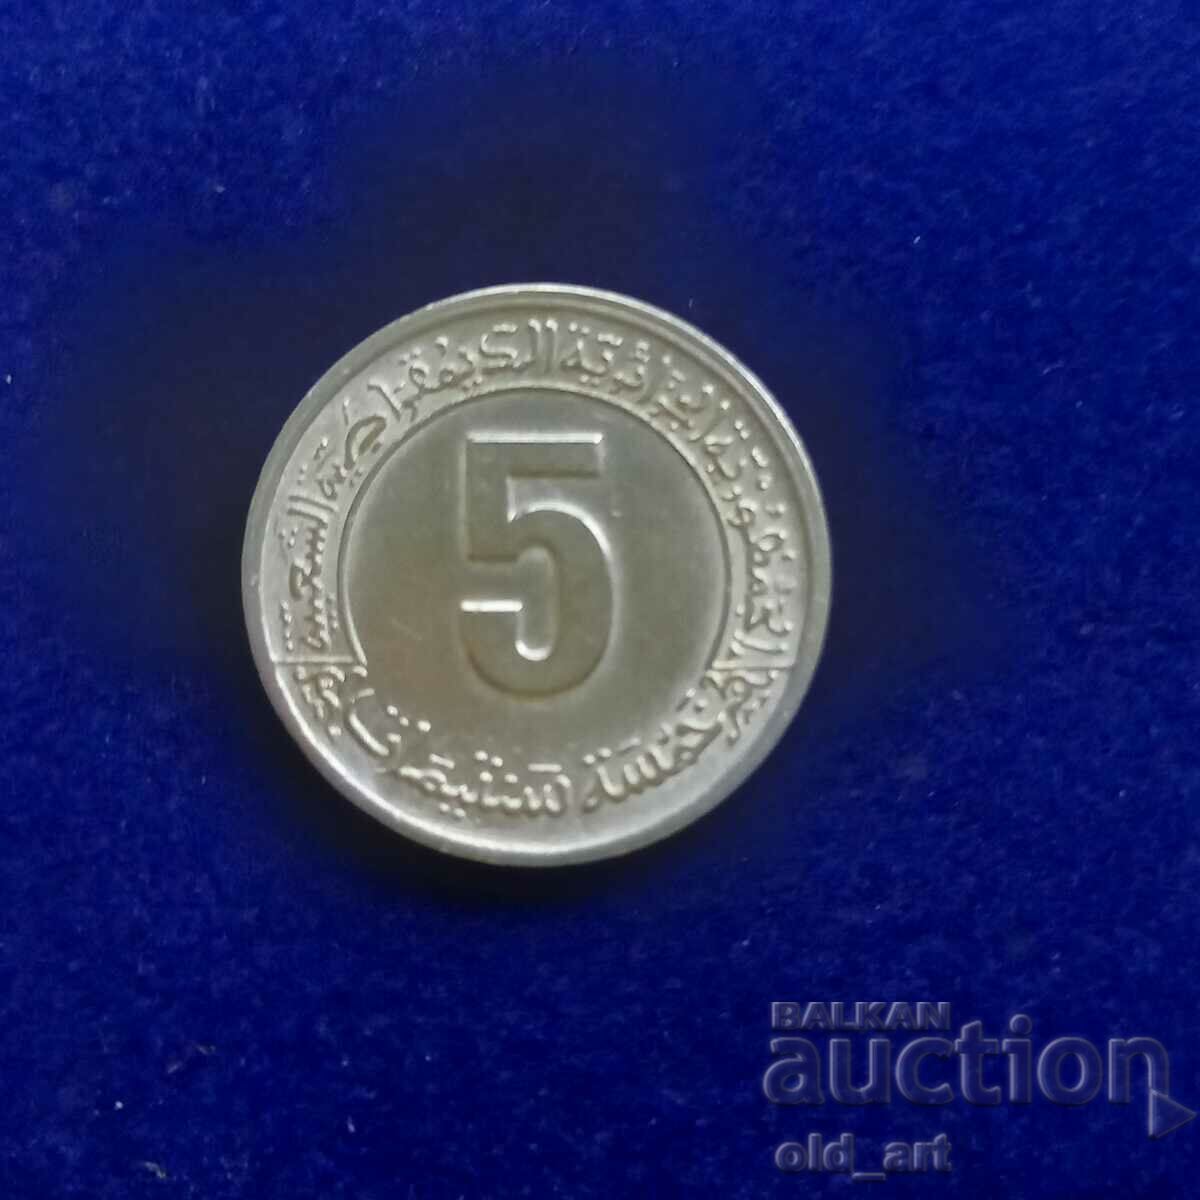 Монета - Алжир, 5 сантимата 1974, възпом., 2-ри петгод. план